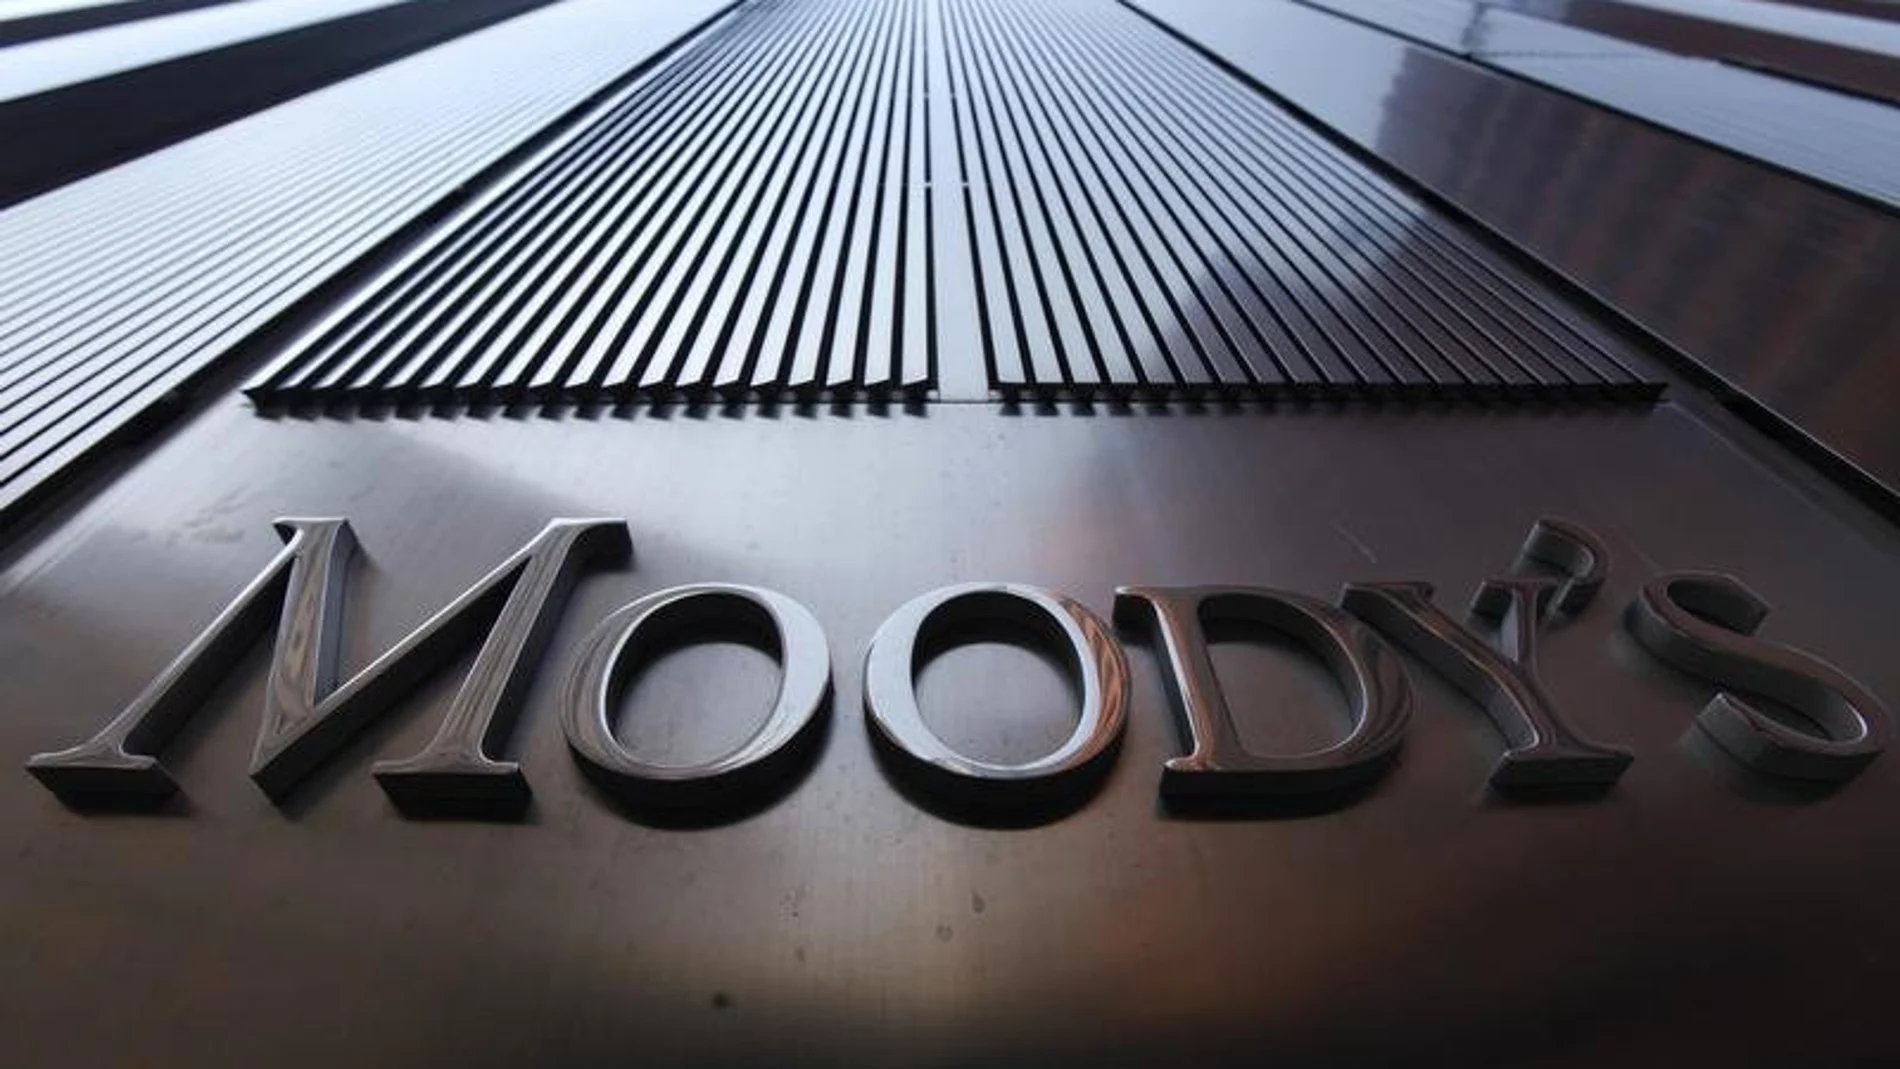 Moody's duda de la capacidad del Gobierno para implementar reformas por la fragmentación parlamentaria